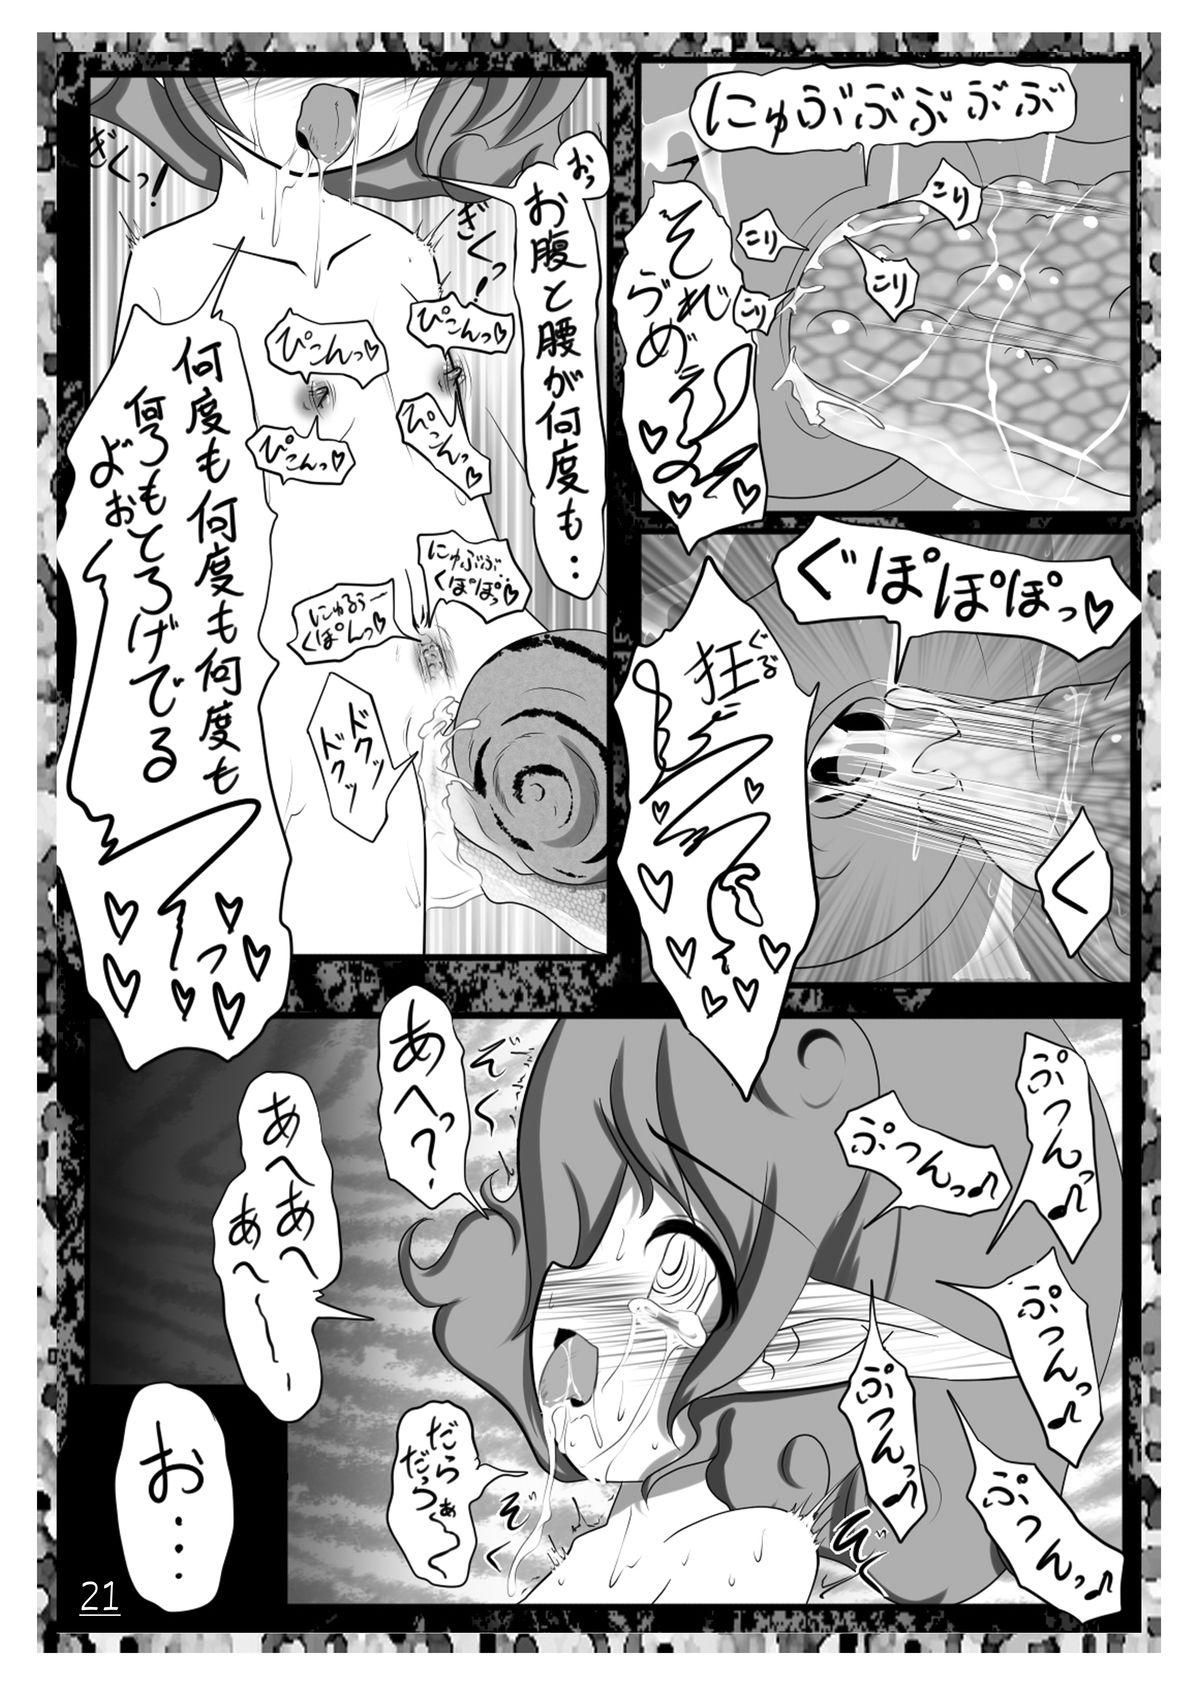 Ecstasy Daizukan! Vol. 1 22